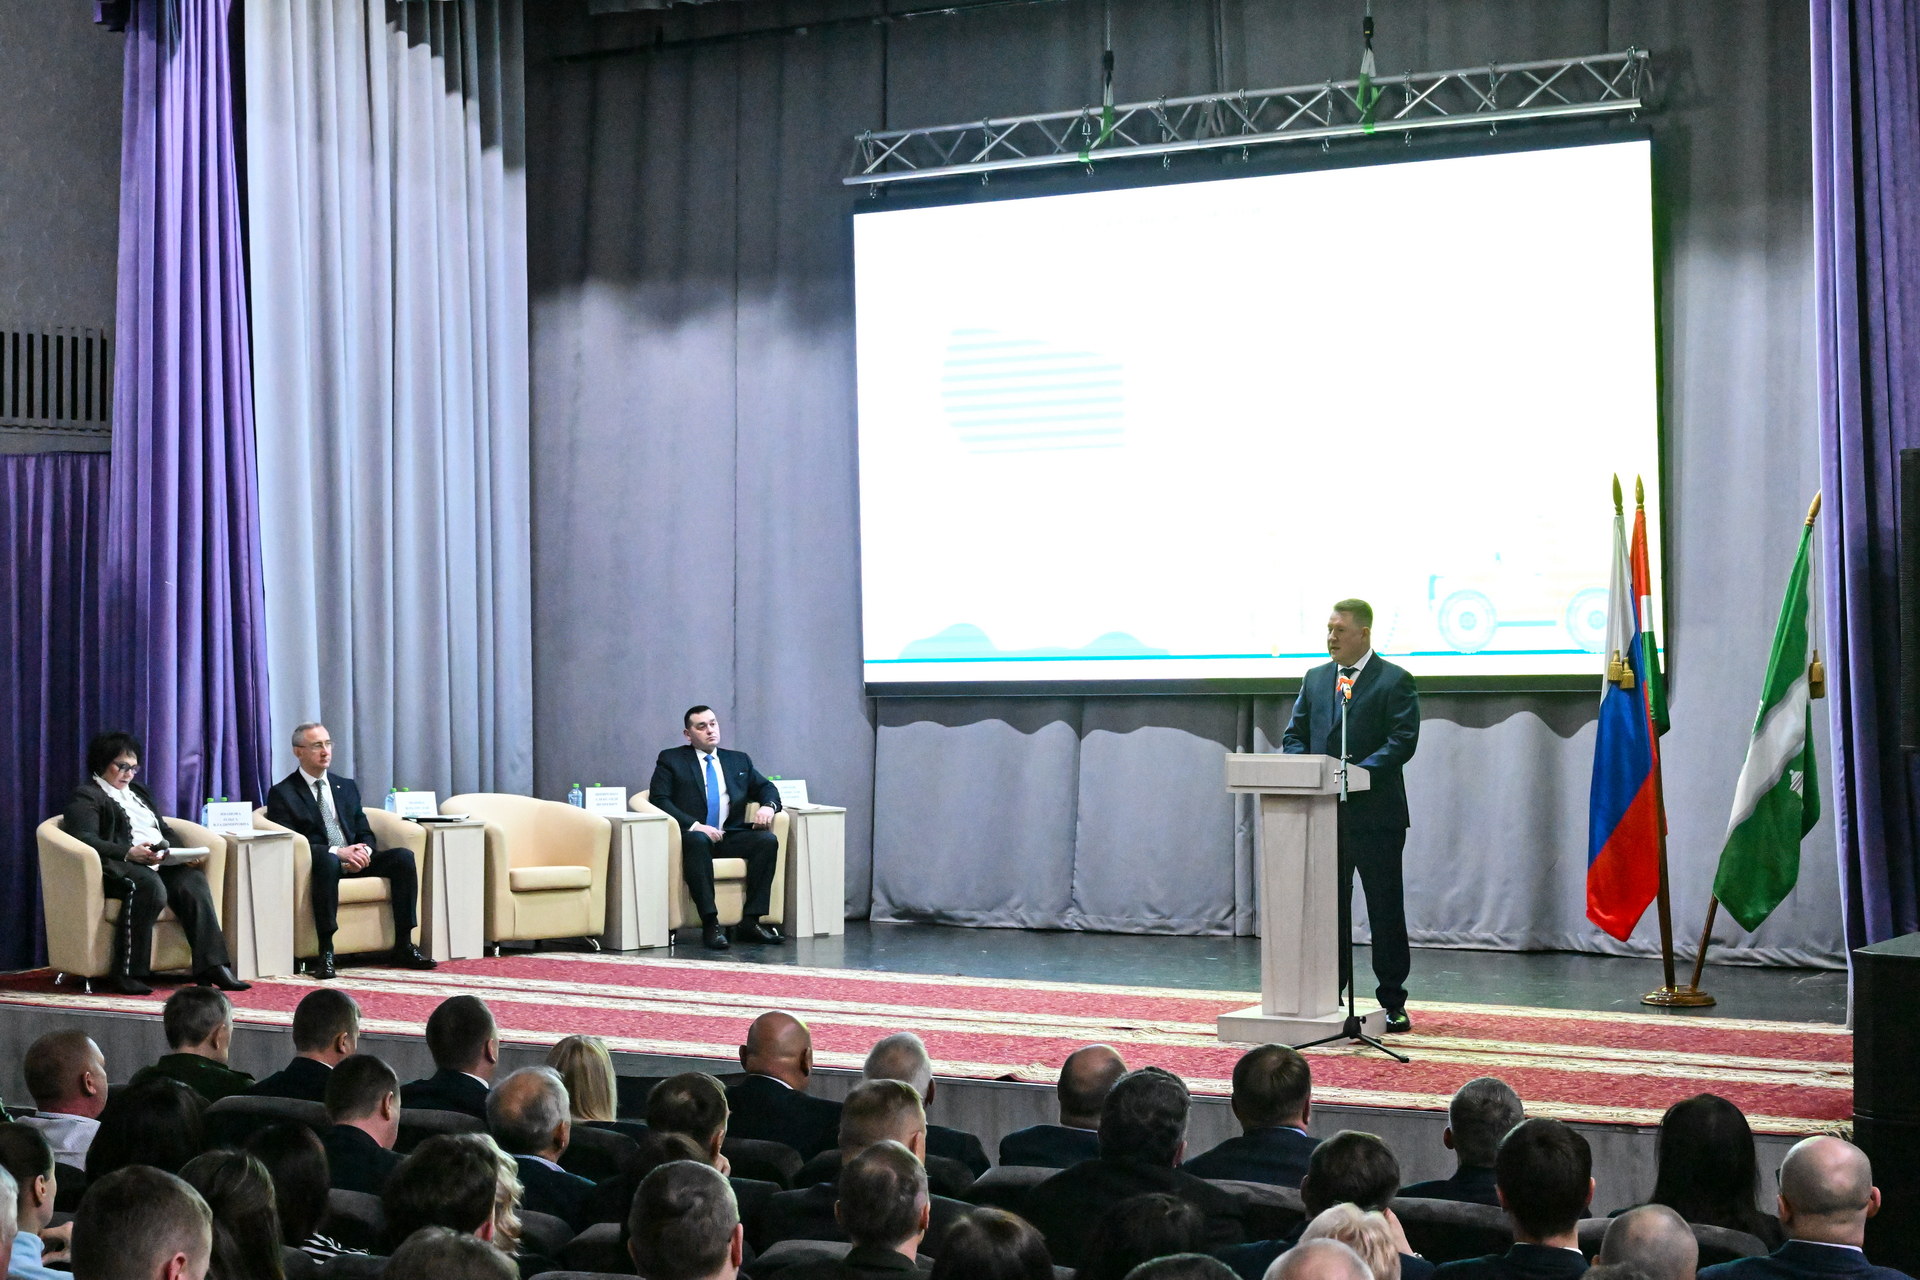 Дорожники Калужской области представили концепцию развития транспортной инфраструктуры и внедрения бесшовного транспортного сообщения.